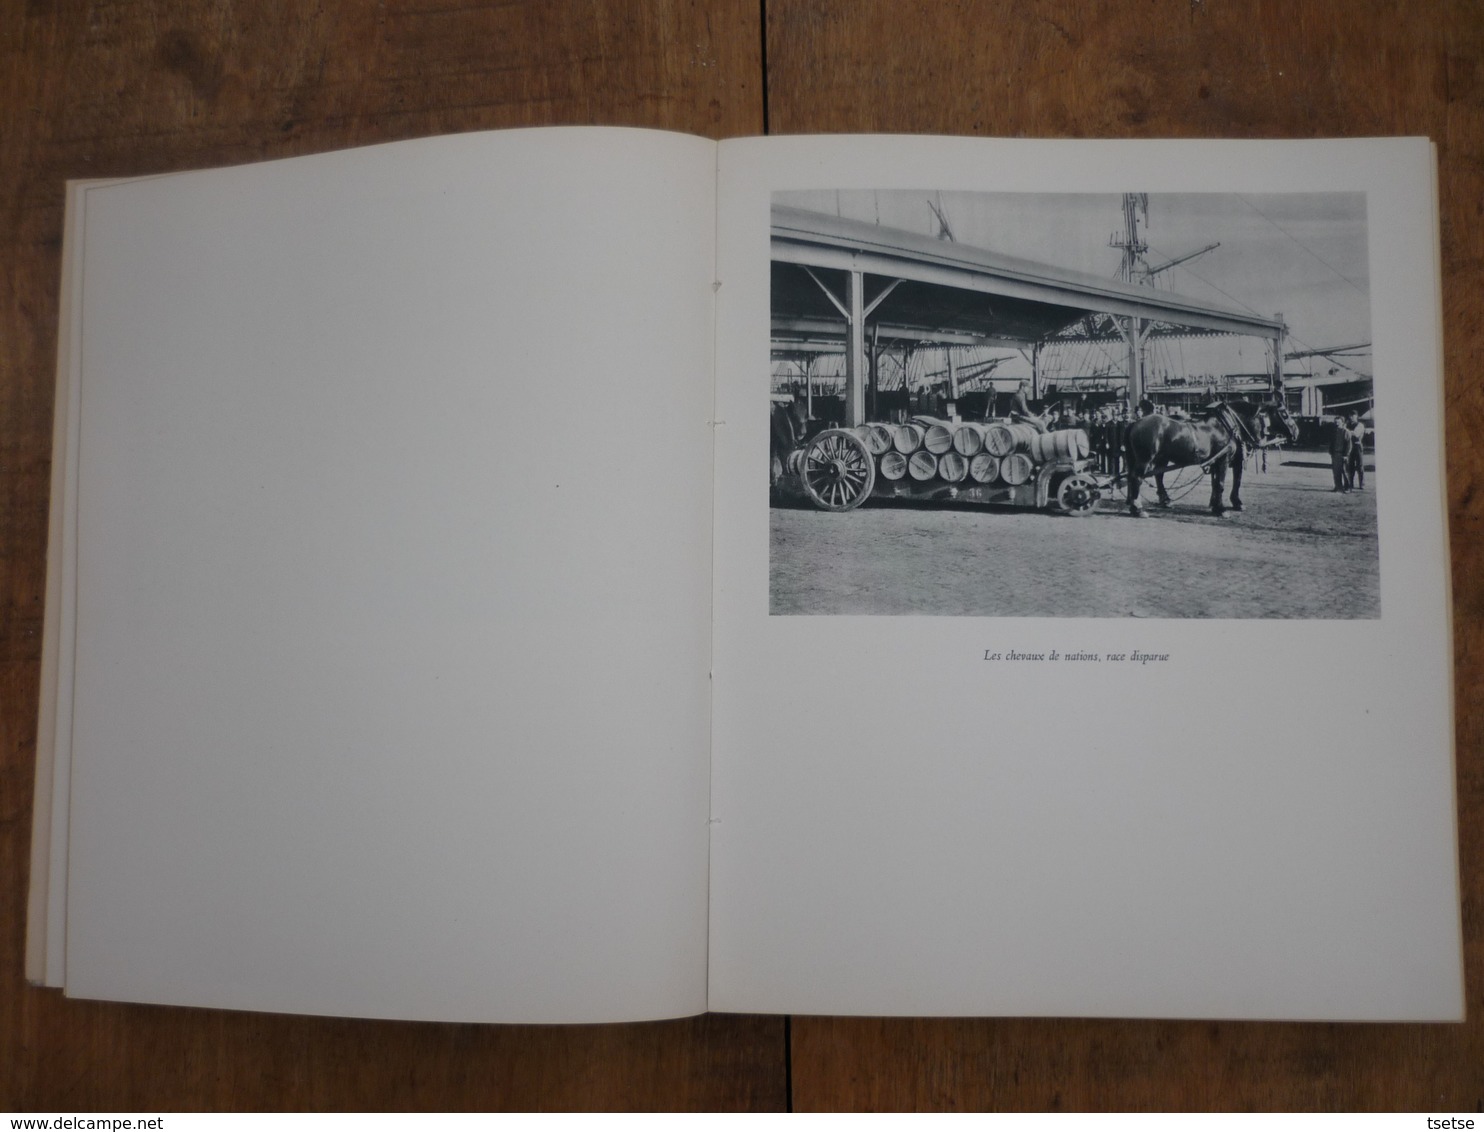 Anvers - Superbe Livre Sur L'histoire De La Compagnie Maritime Belge ( LLoyd Royal ) 1895-1945 ( Voir Scan ) - Antwerpen